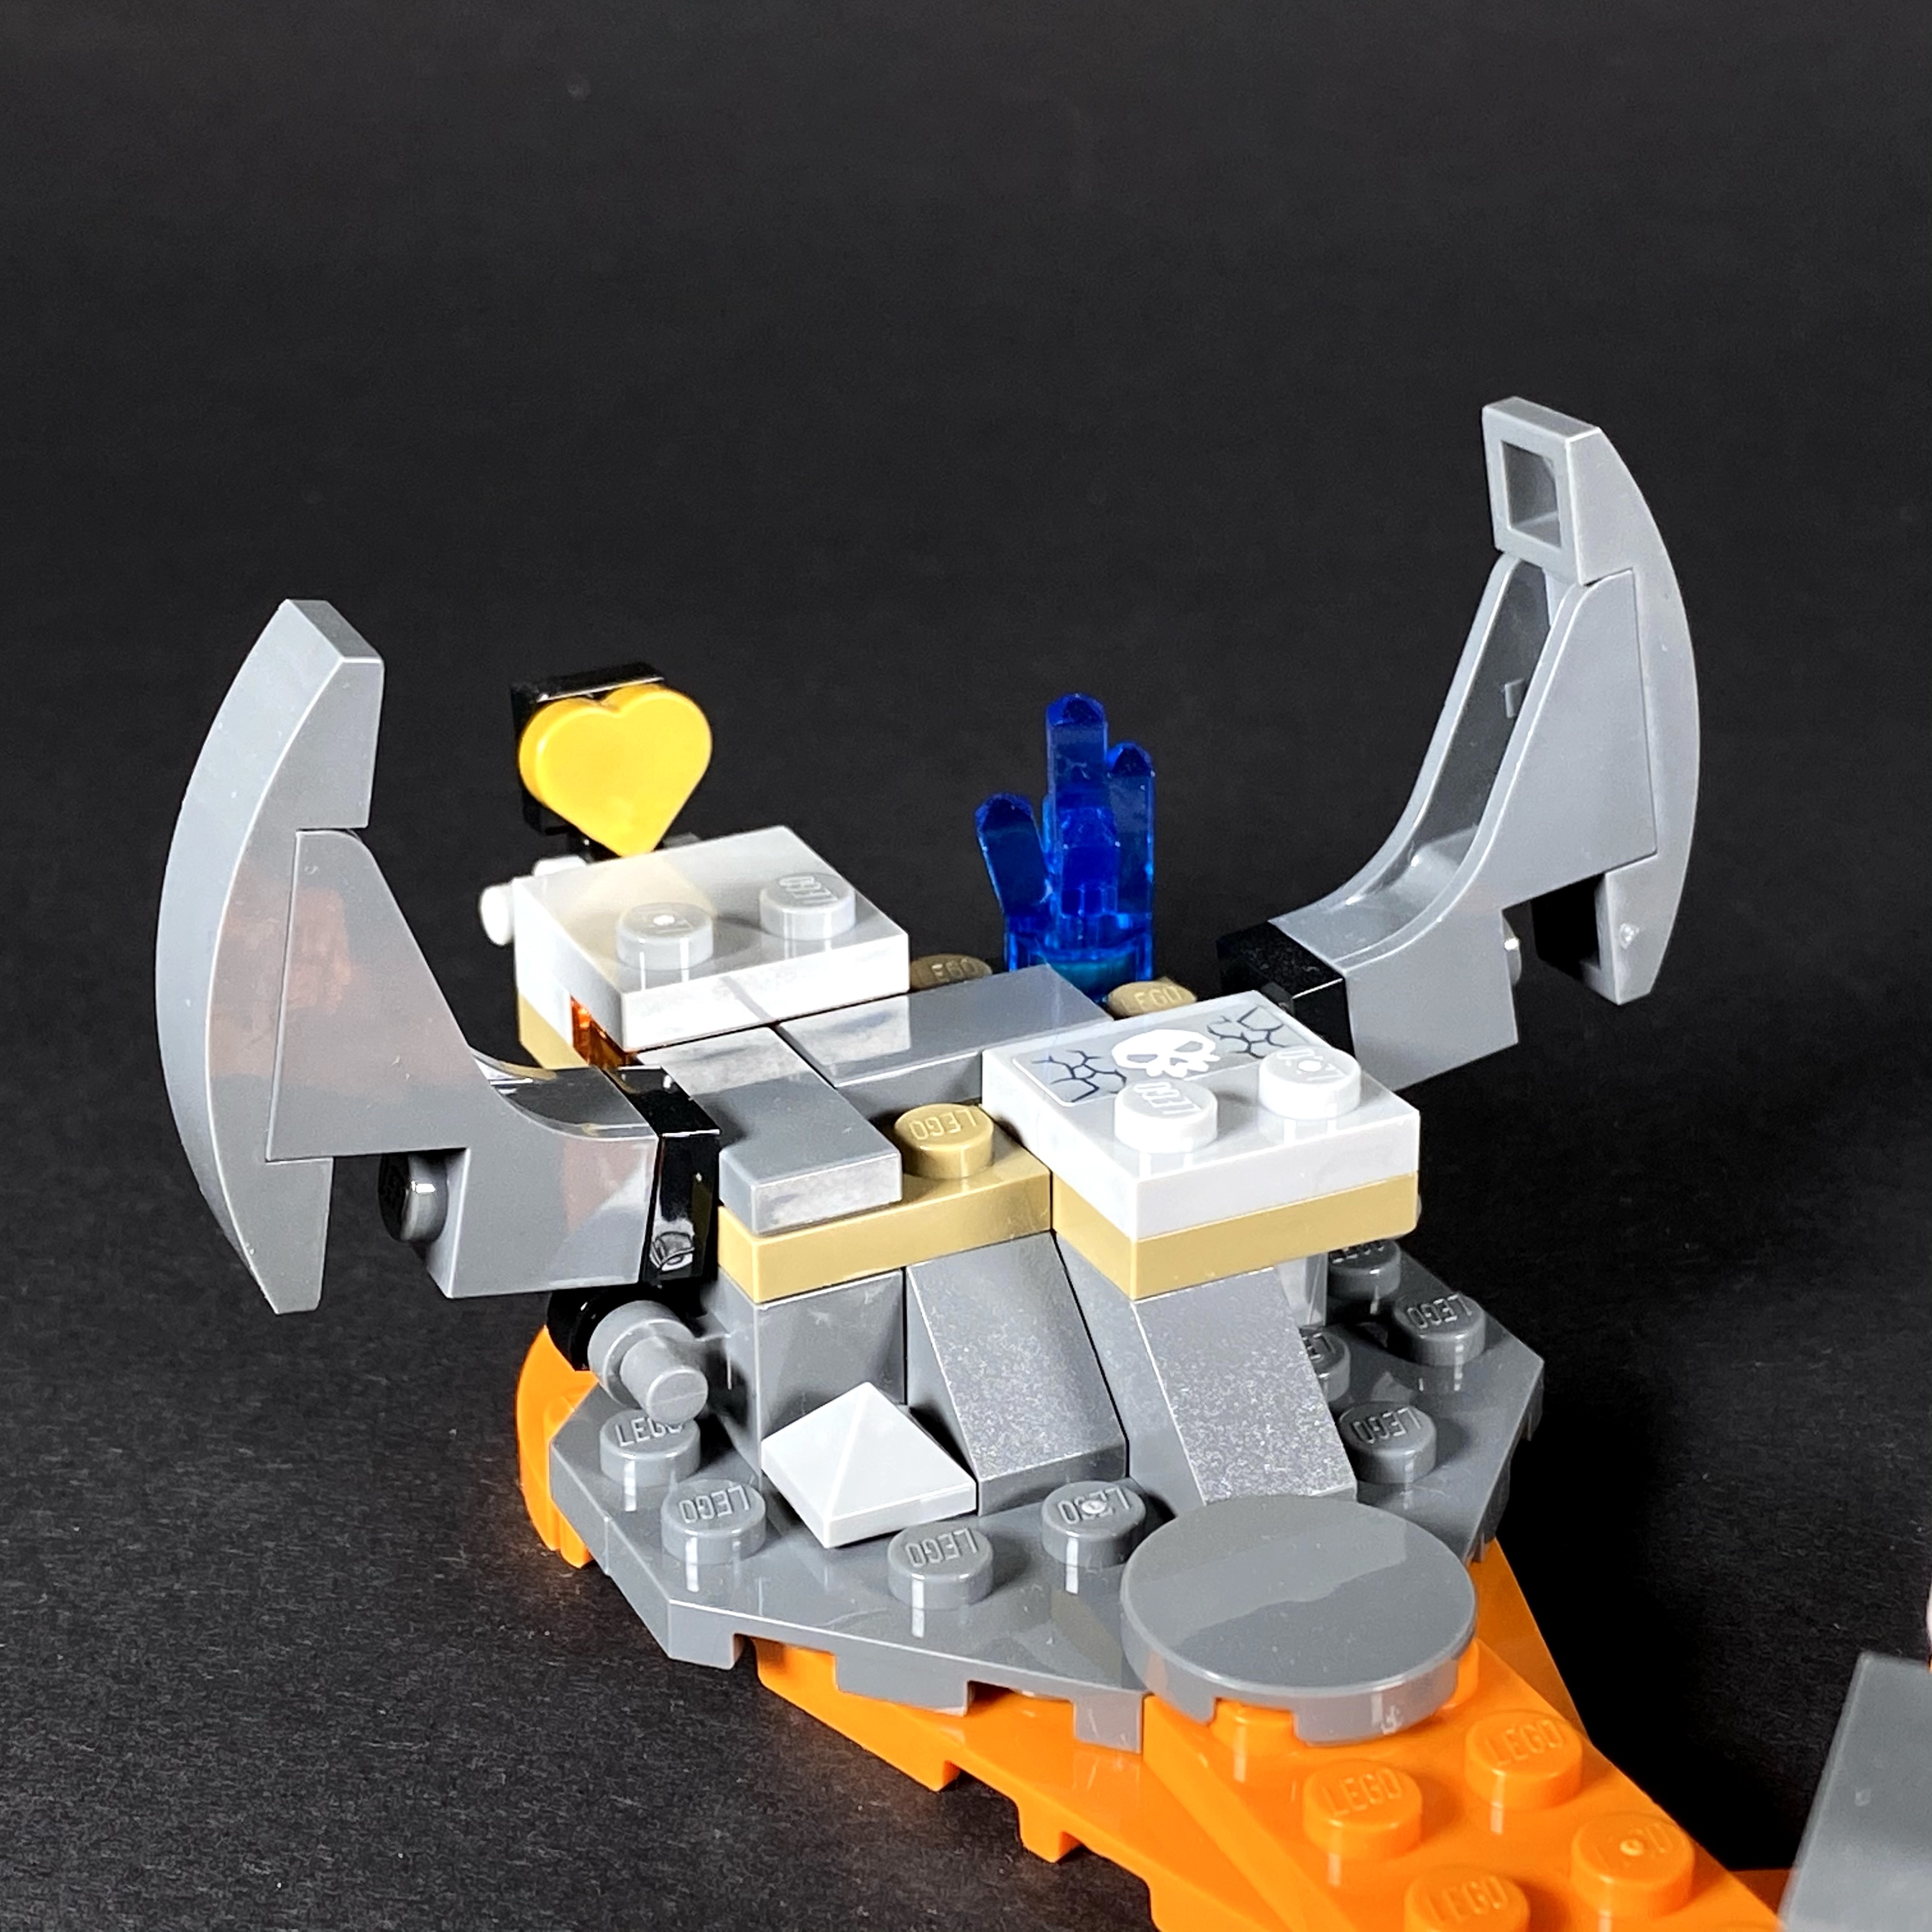 frappe un grand coup en proposant ce set LEGO Star Wars à